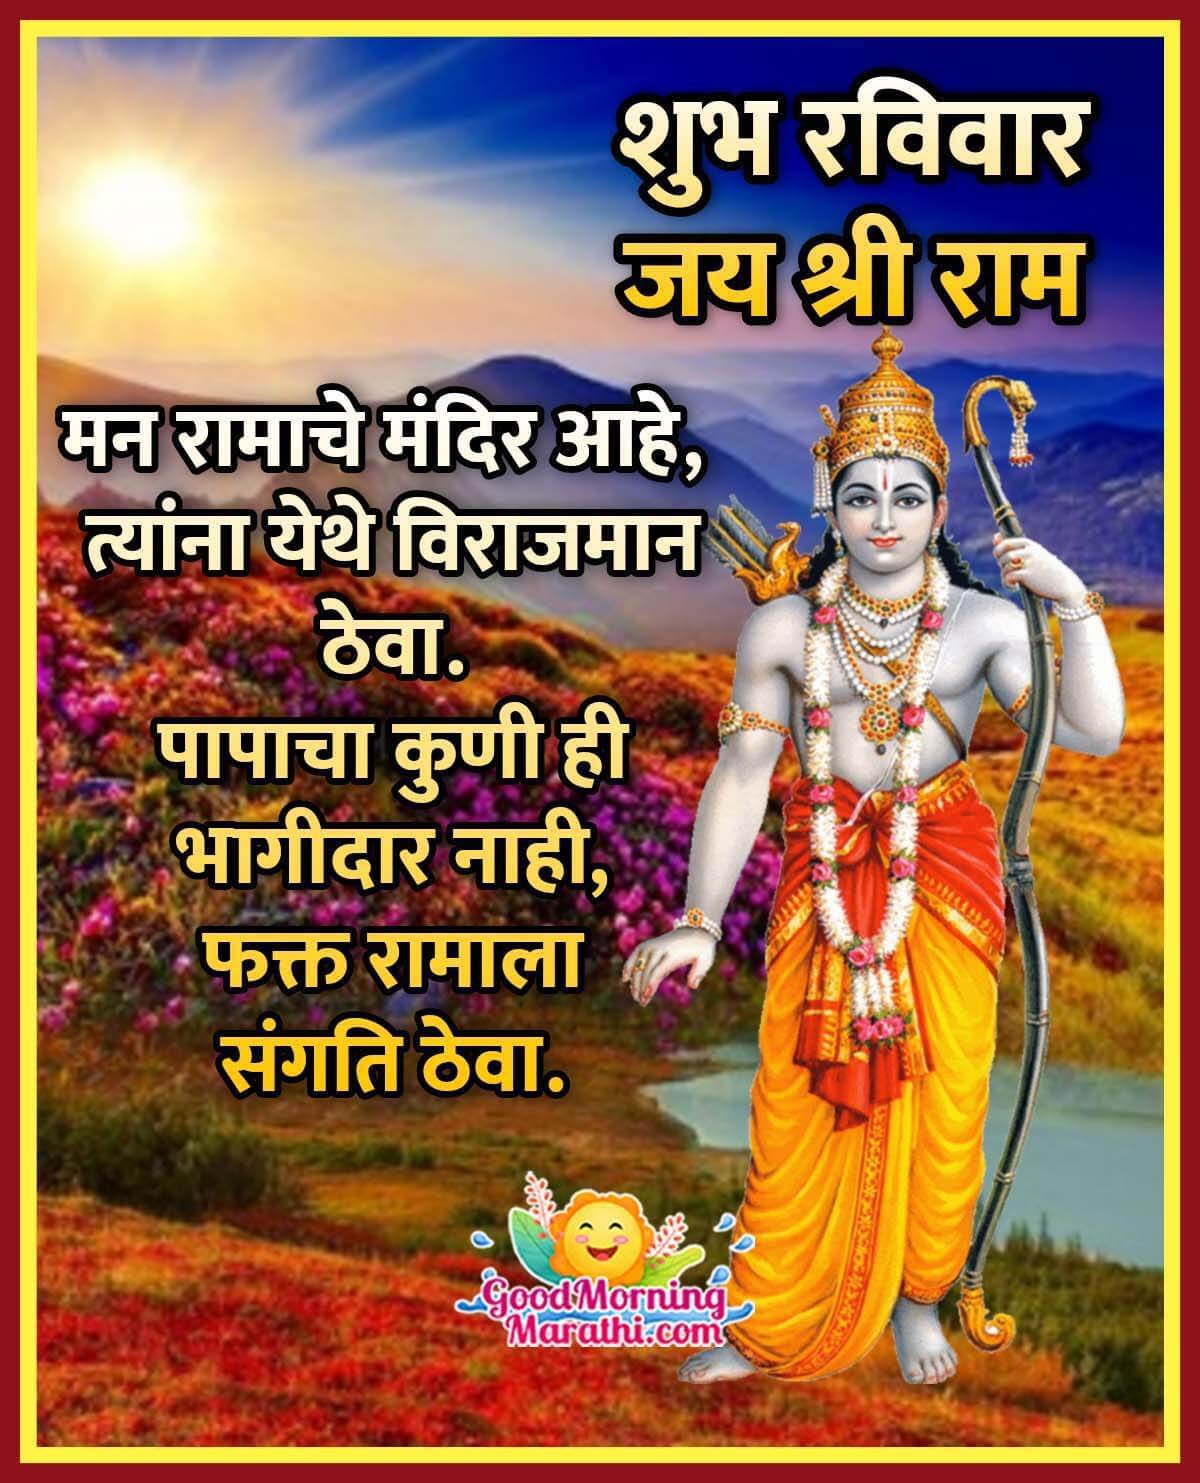 good morning marathi god images